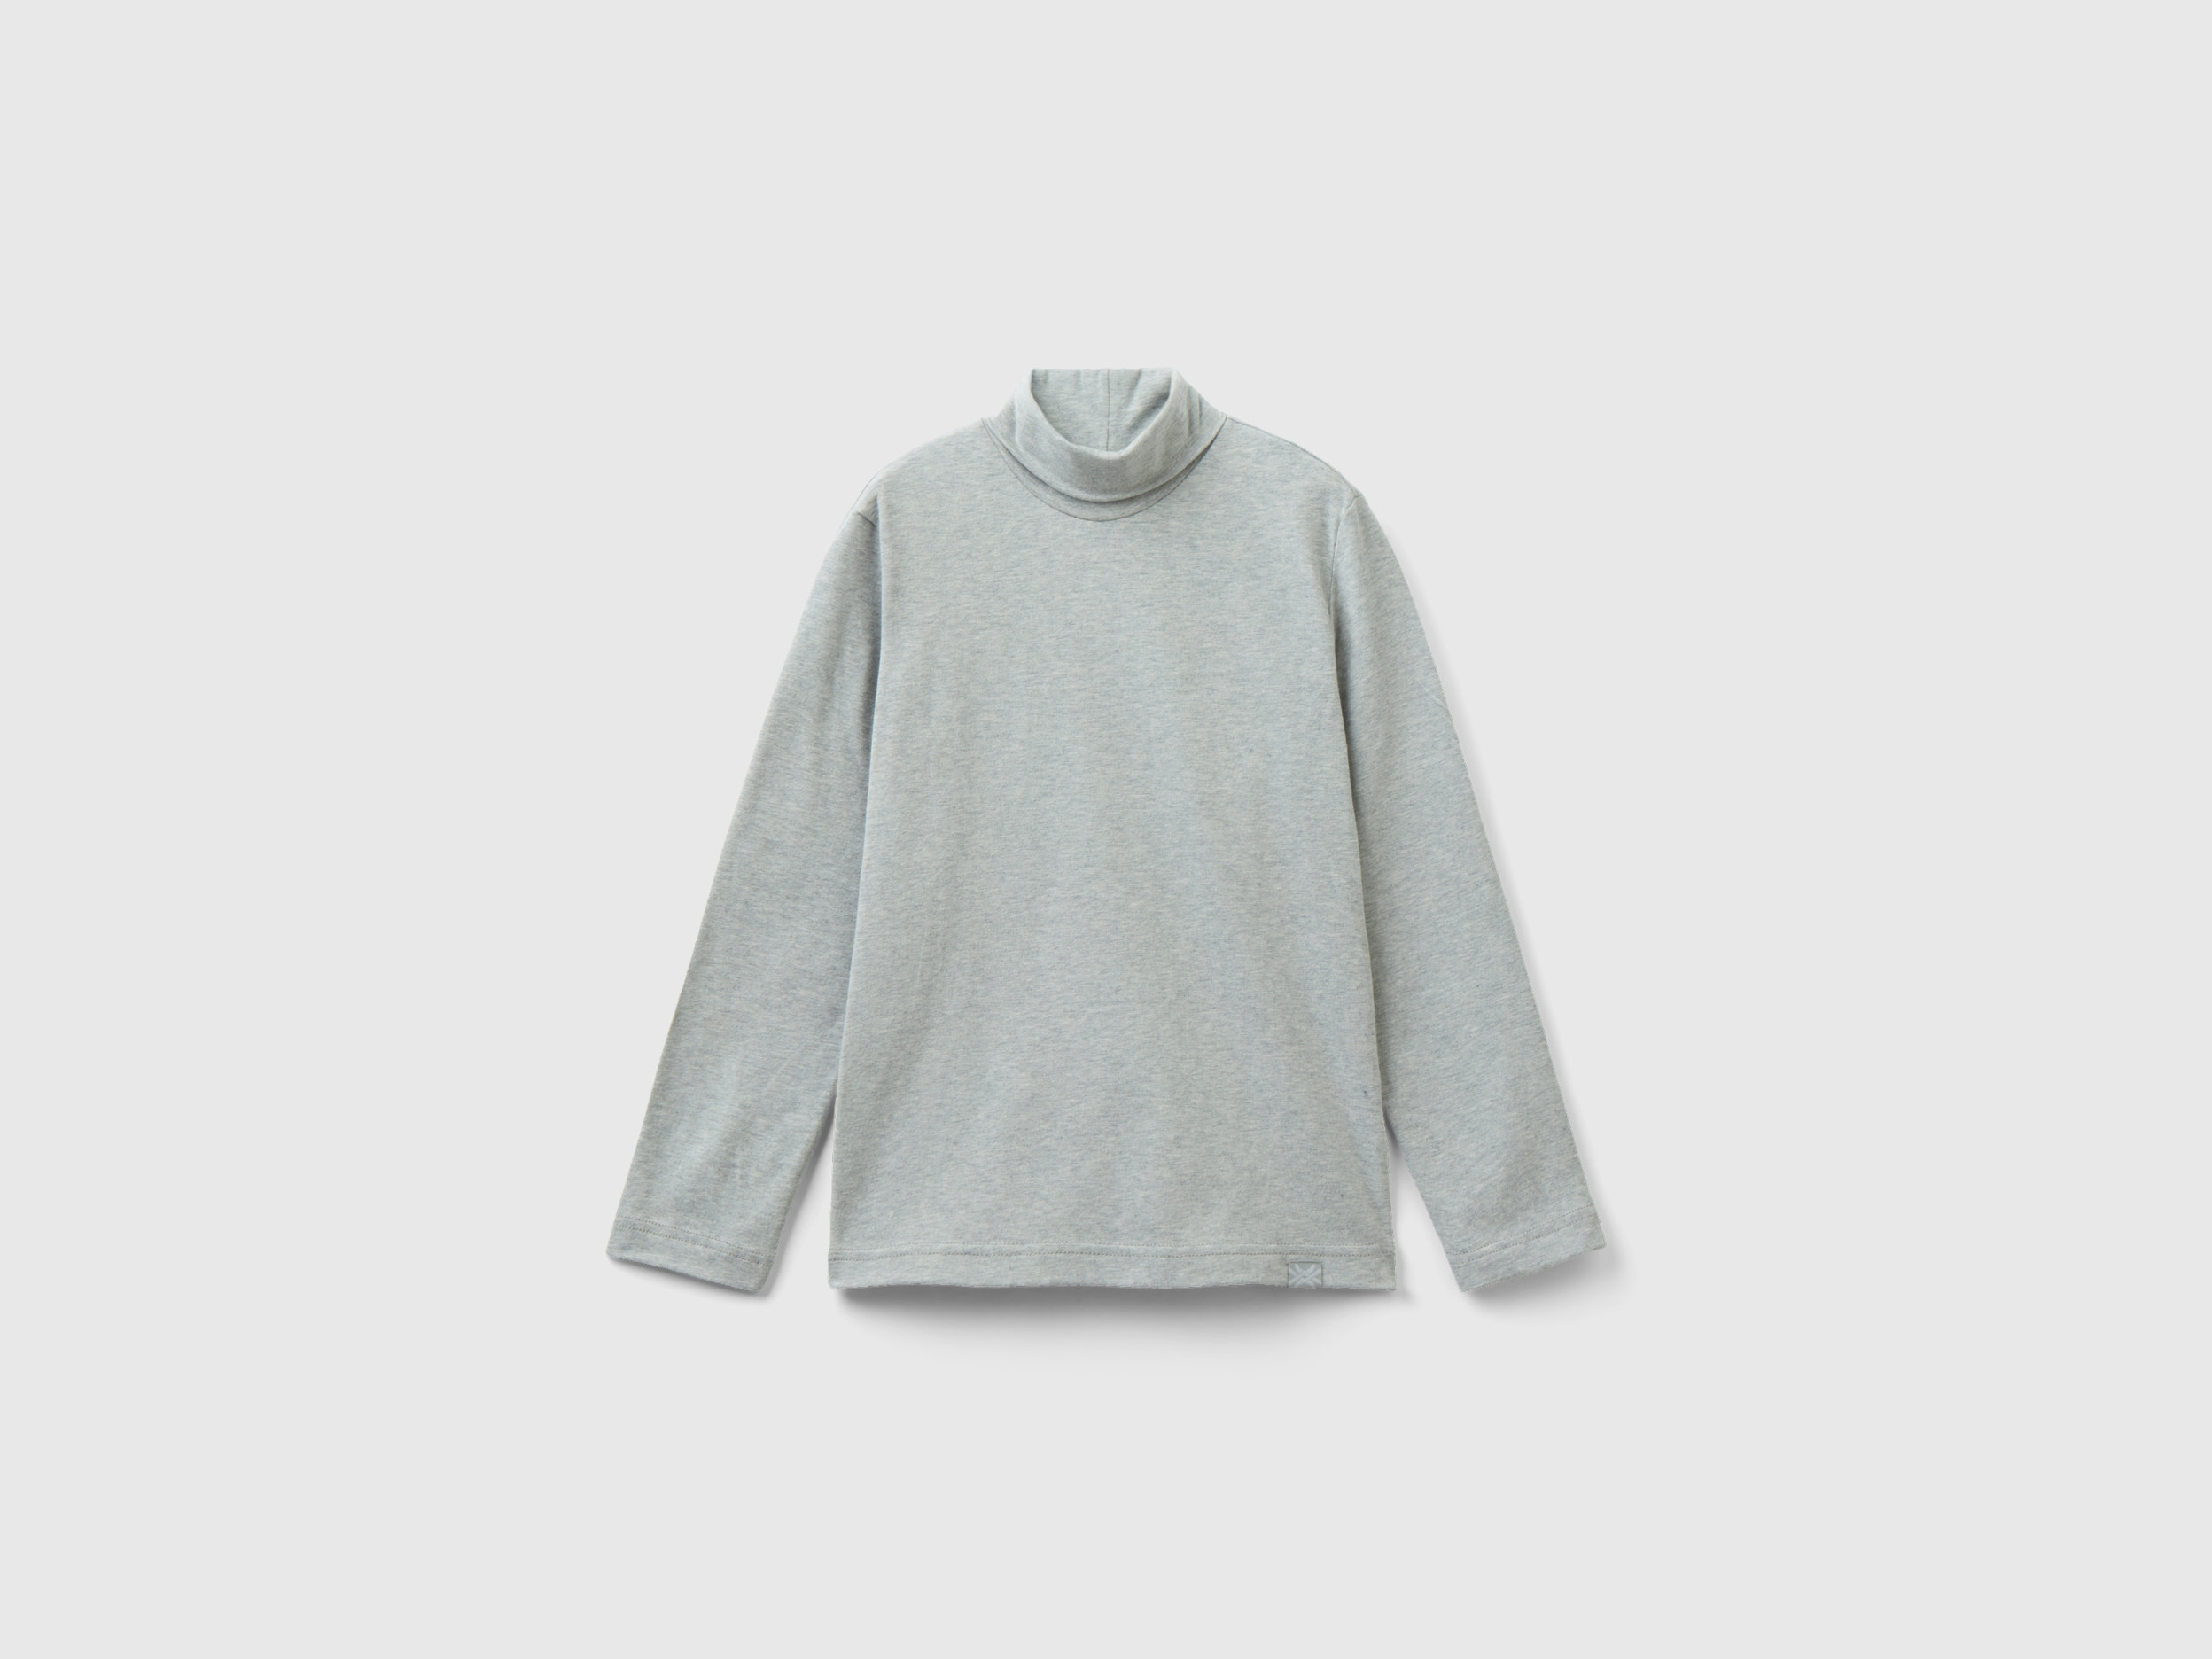 Benetton, Long Sleeve Turtleneck T-shirt, size 2XL, Light Gray, Kids